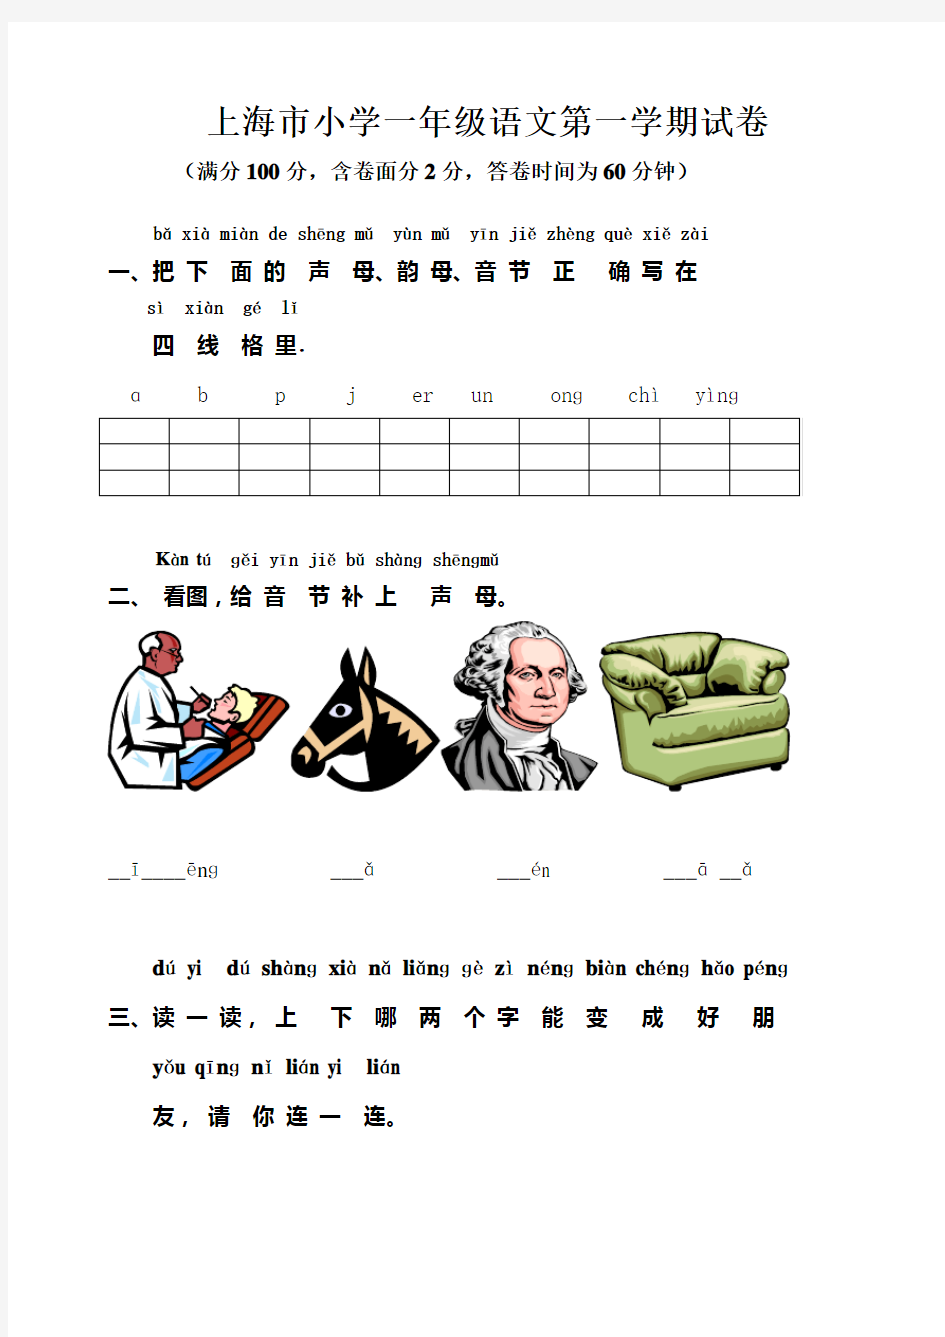 上海市小学一年级语文第一学期试卷 